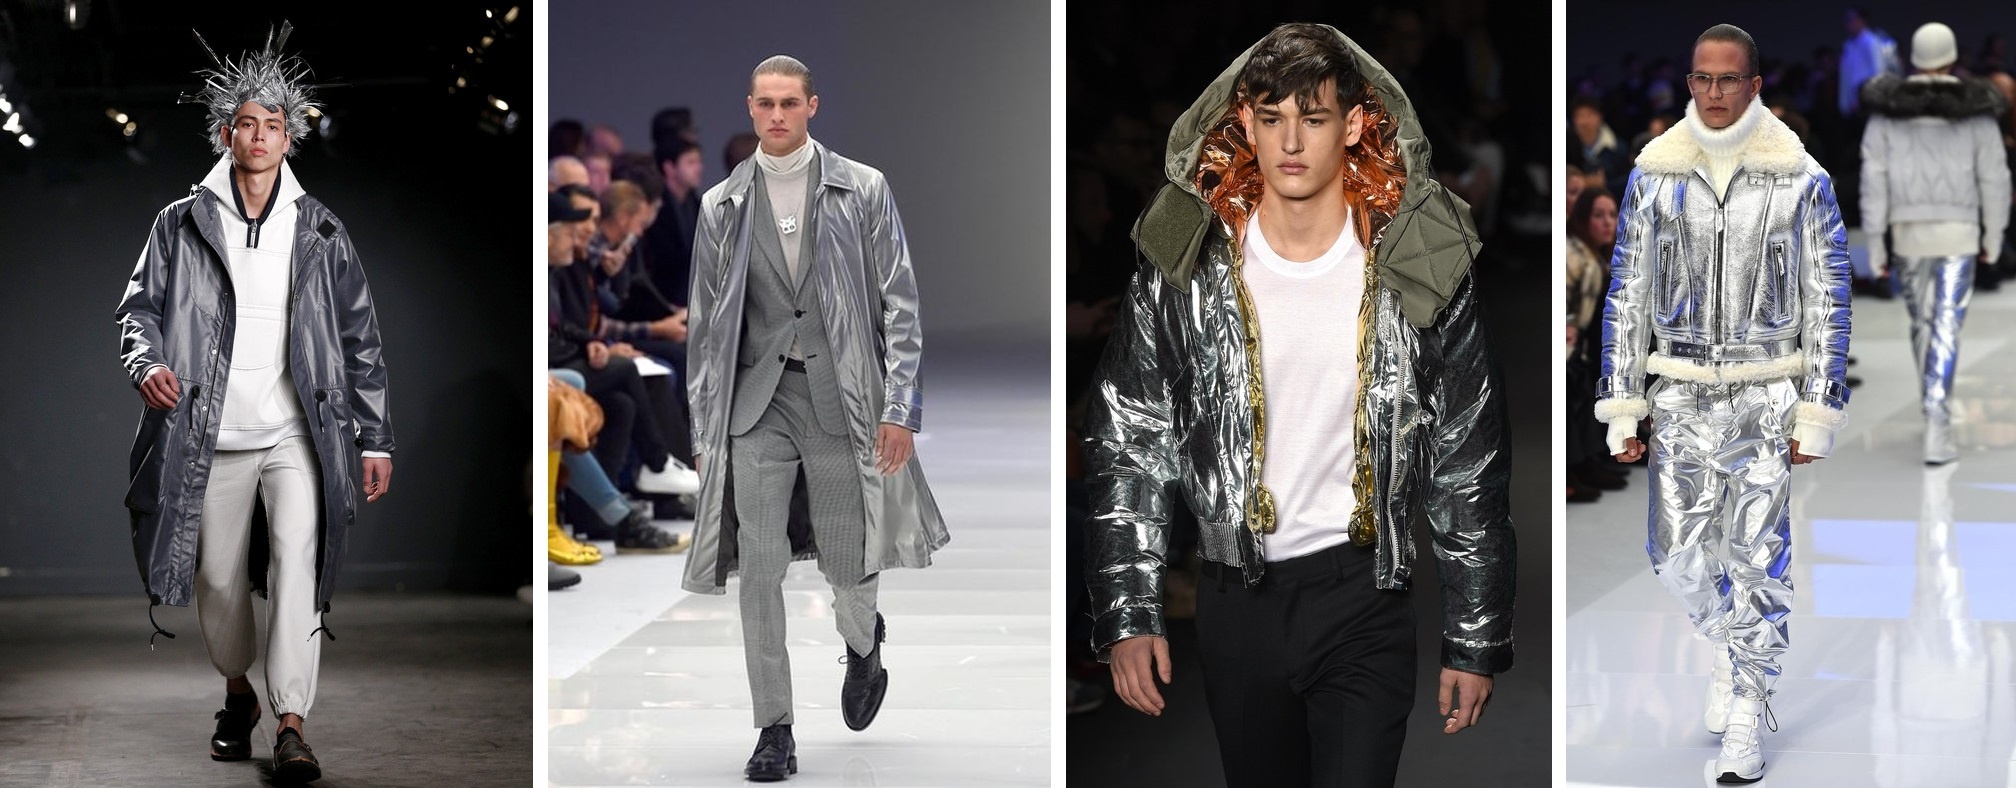 Сім основних трендів чоловічої моди сезону осінь-зима 2016 - фото 1